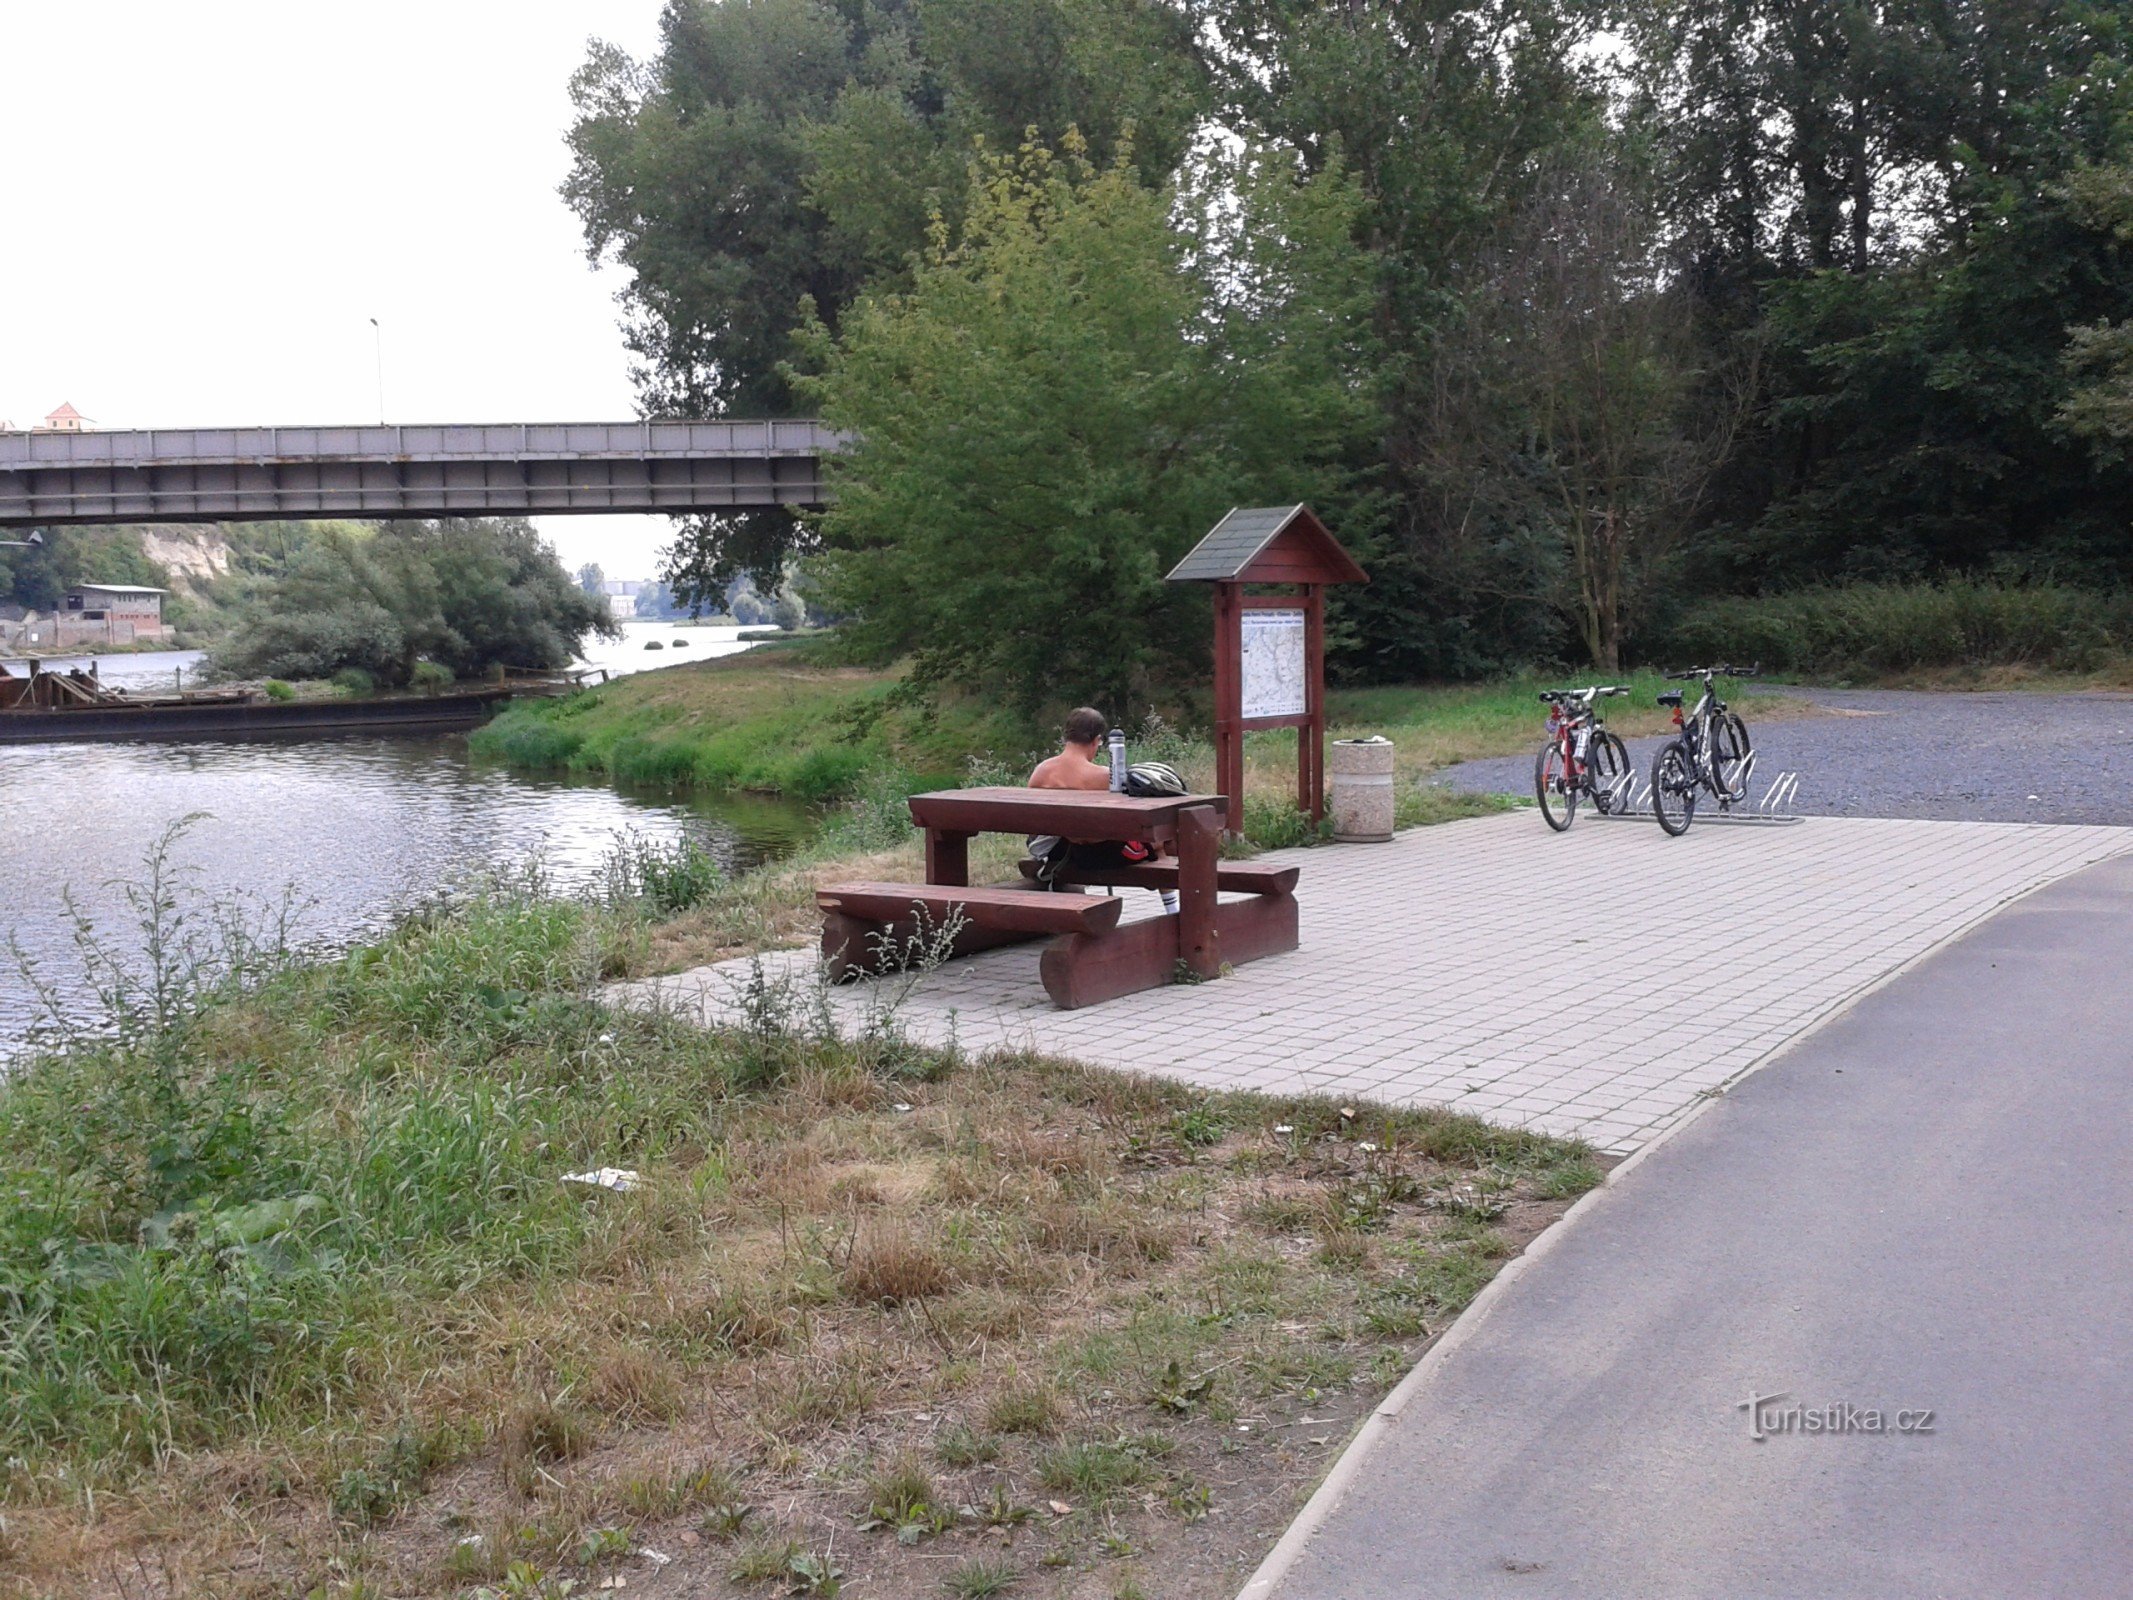 Radtour entlang der Elbe von Mělník nach Stará Boleslav